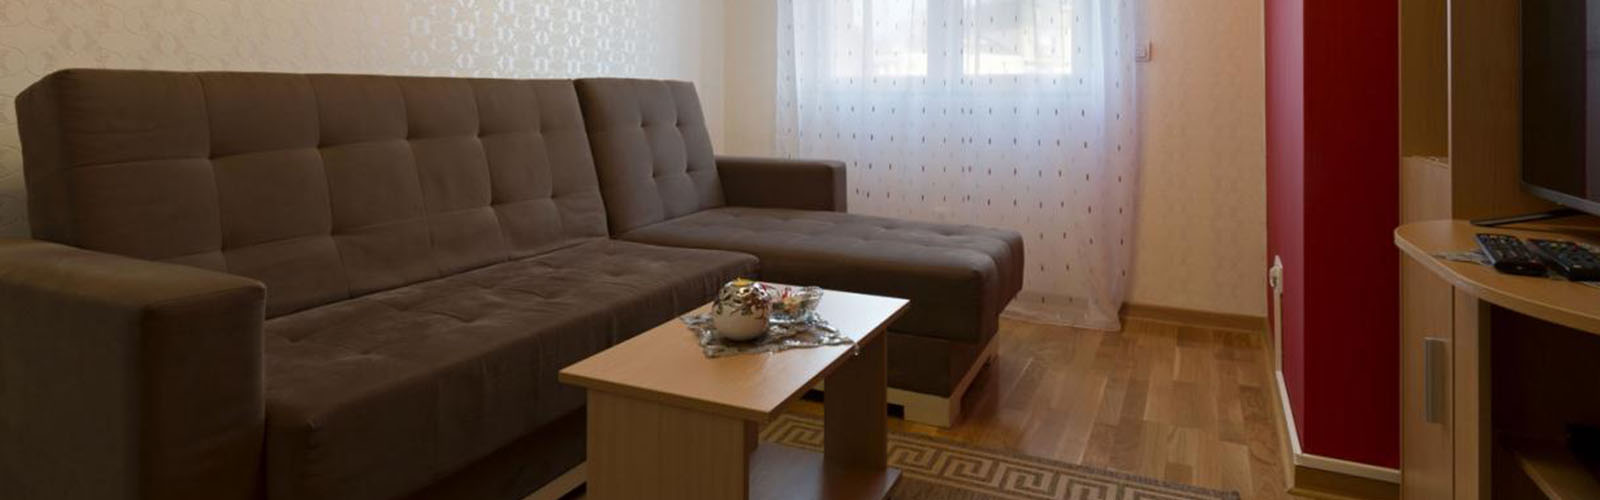 Concierge Belgrade | Apartment Delta Top 101